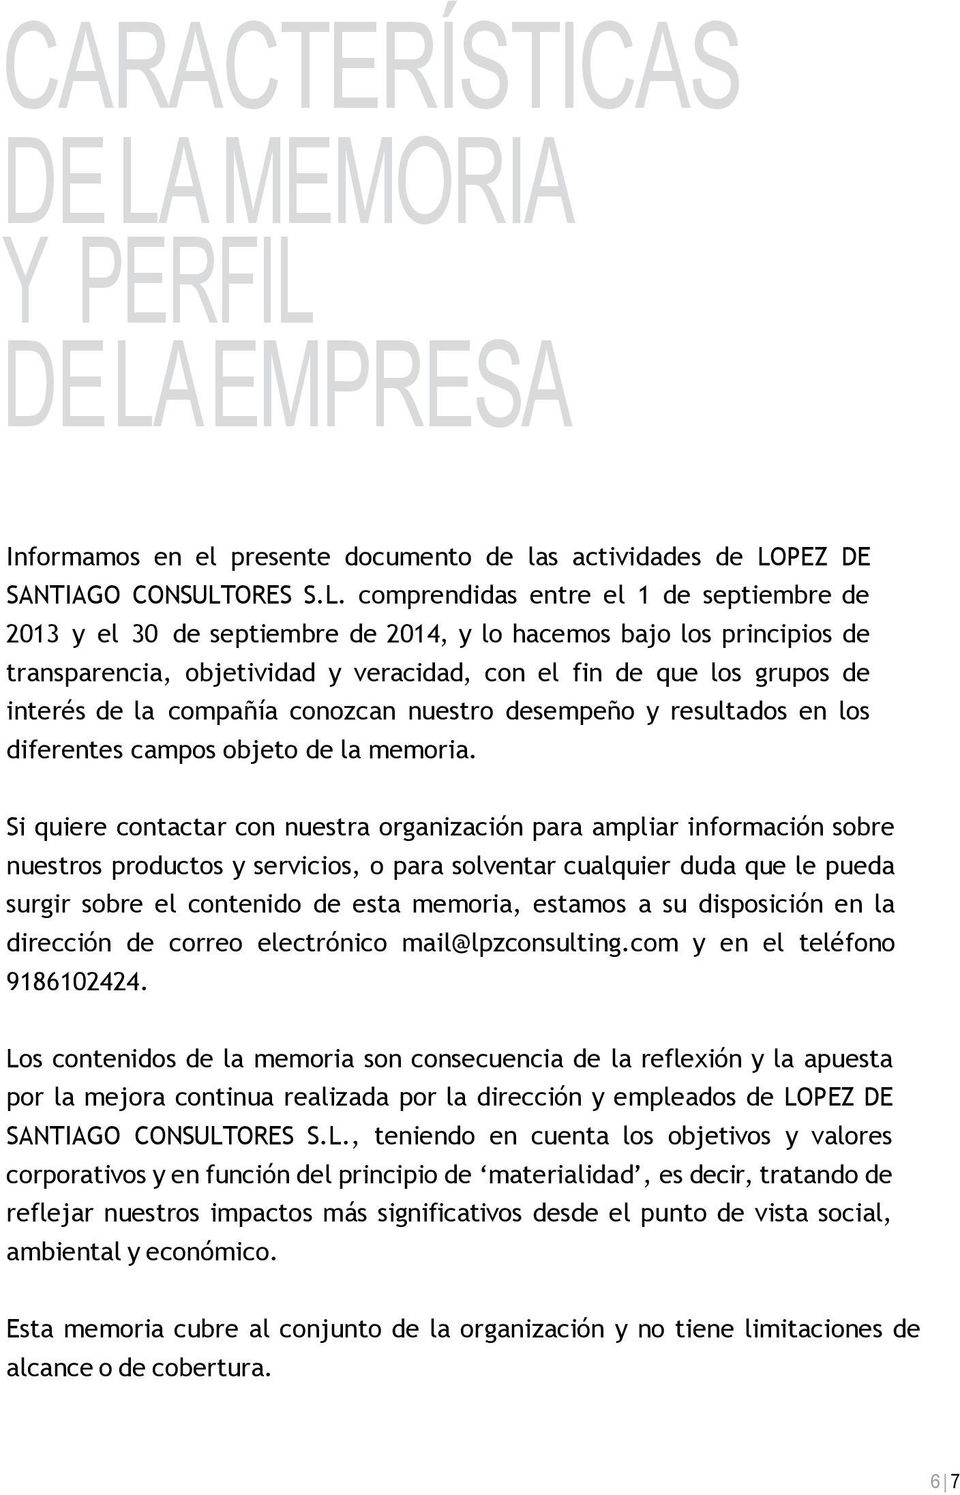 DE LA EMPRESA Informamos en el presente documento de las actividades de LOPEZ DE SANTIAGO CONSULTORES S.L. comprendidas entre el 1 de septiembre de 2013 y el 30 de septiembre de 2014, y lo hacemos